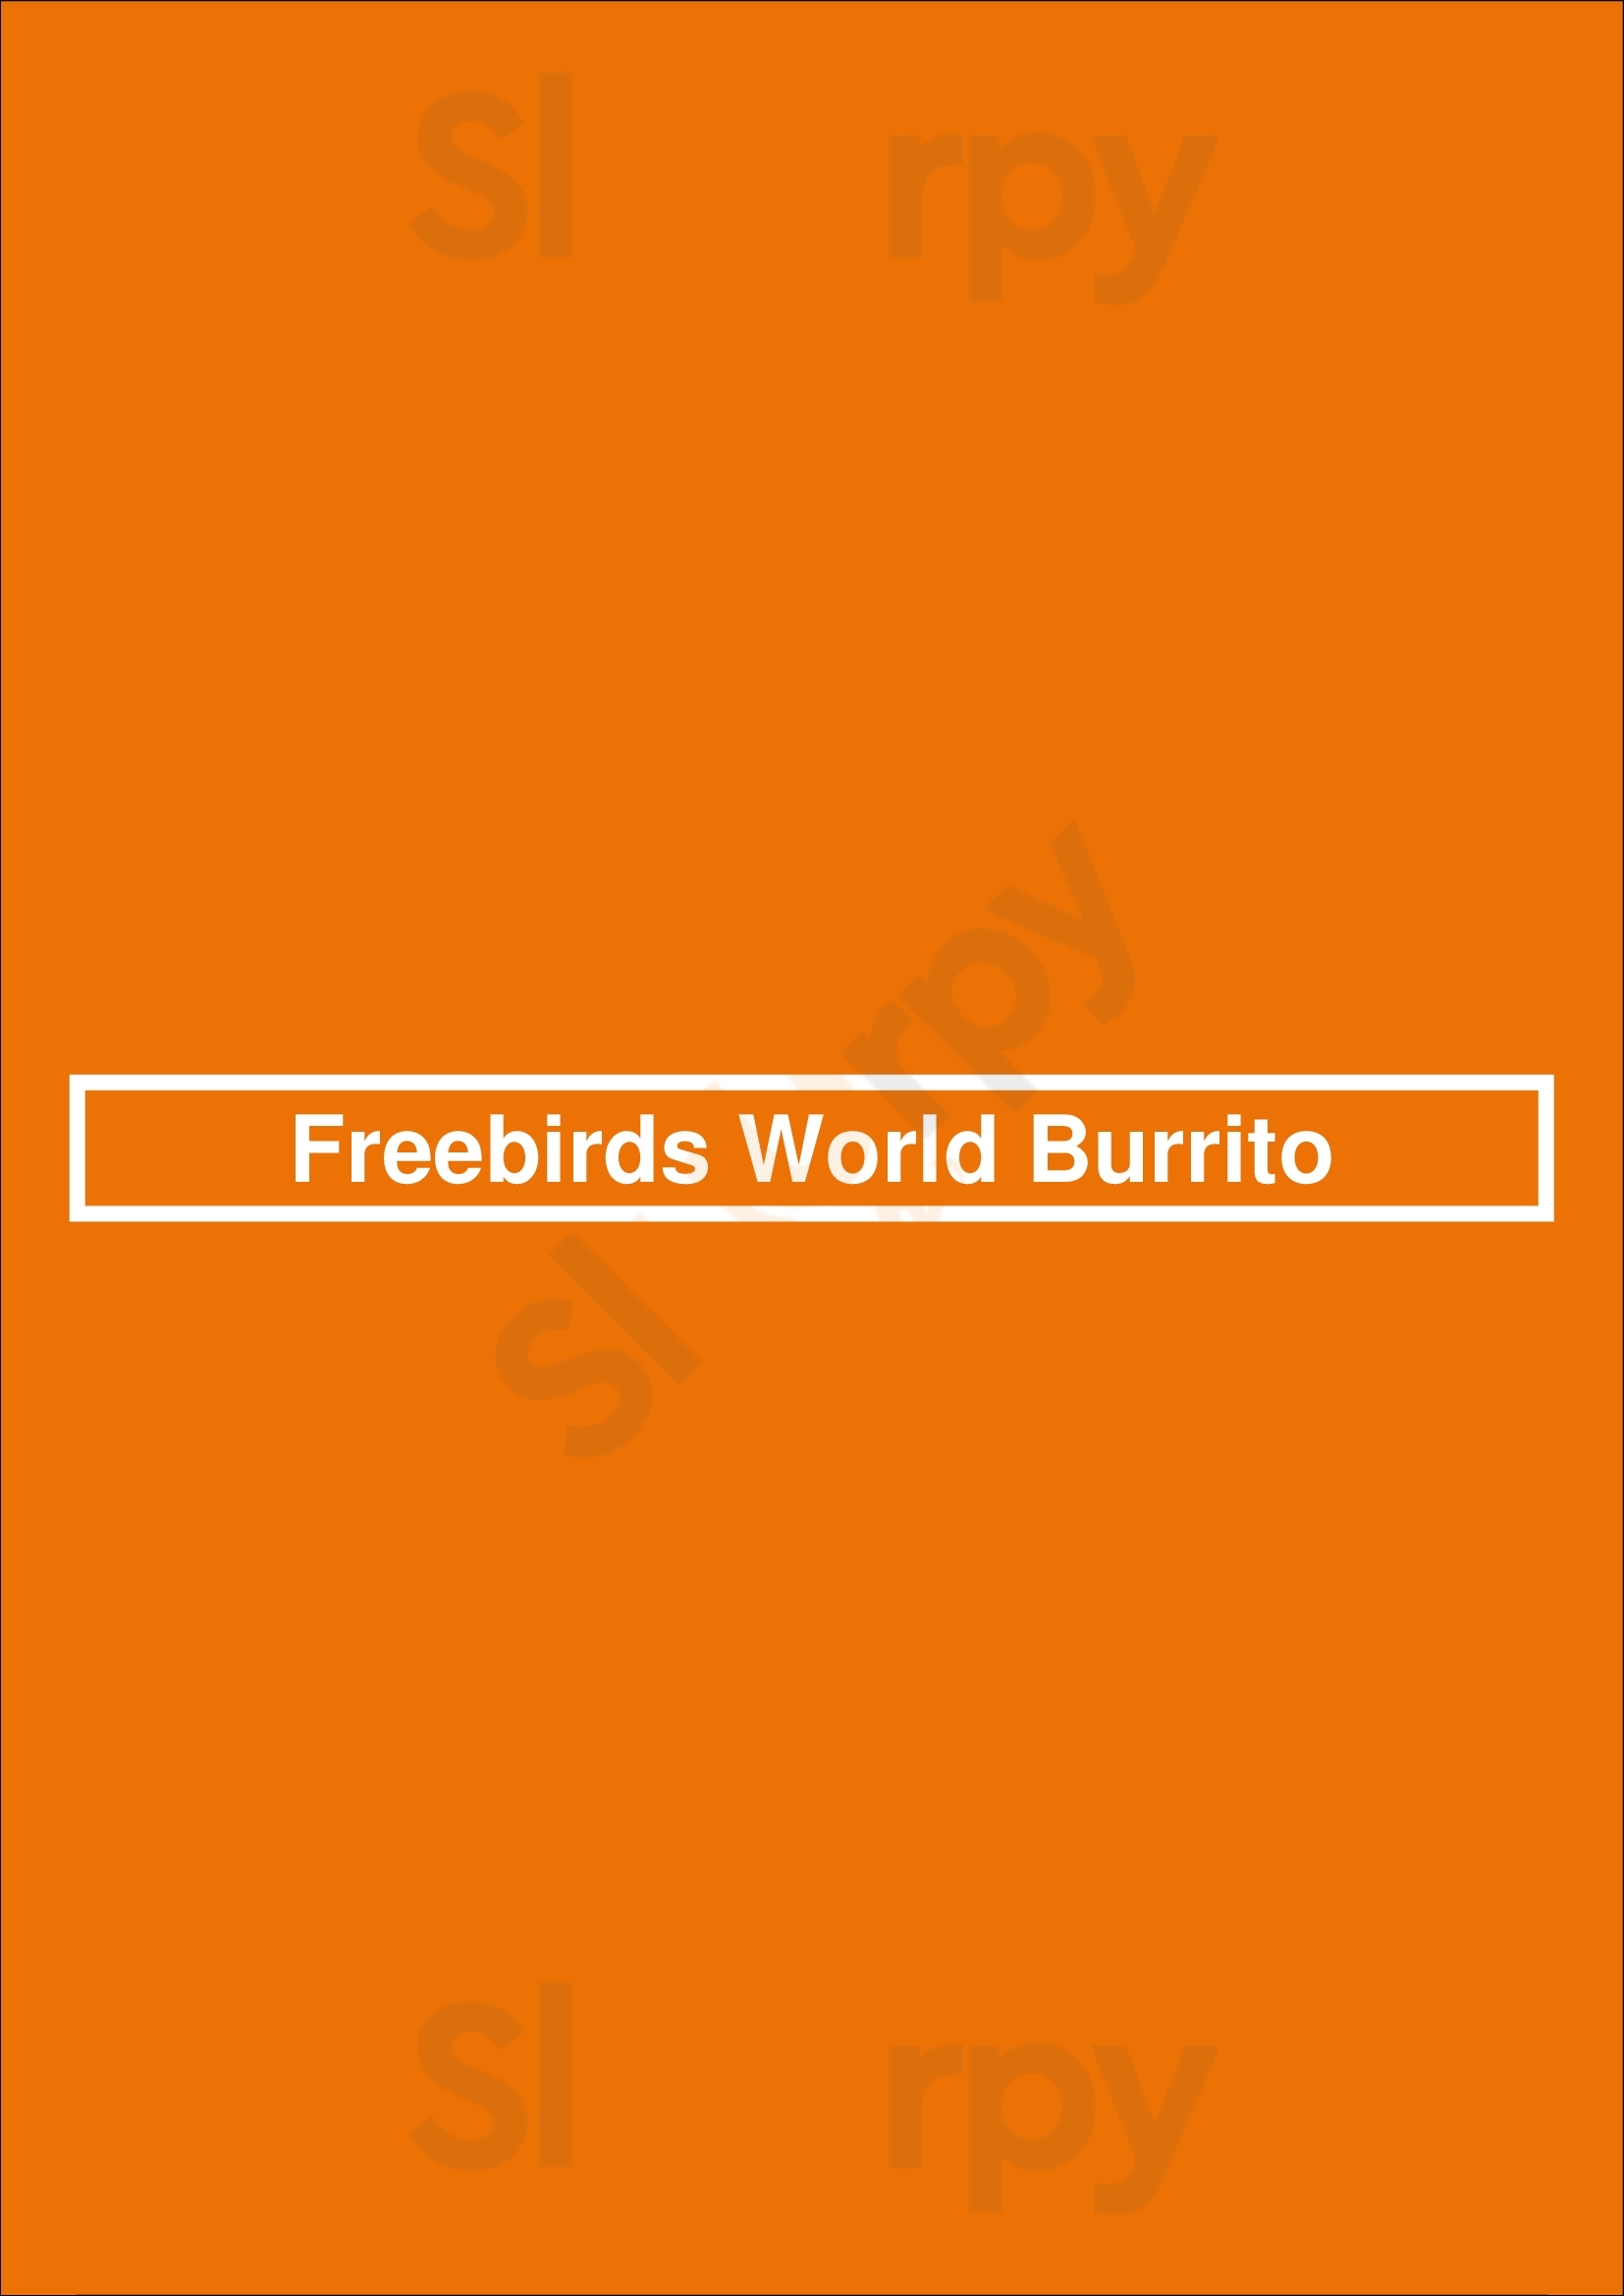 Freebirds World Burrito Dallas Menu - 1